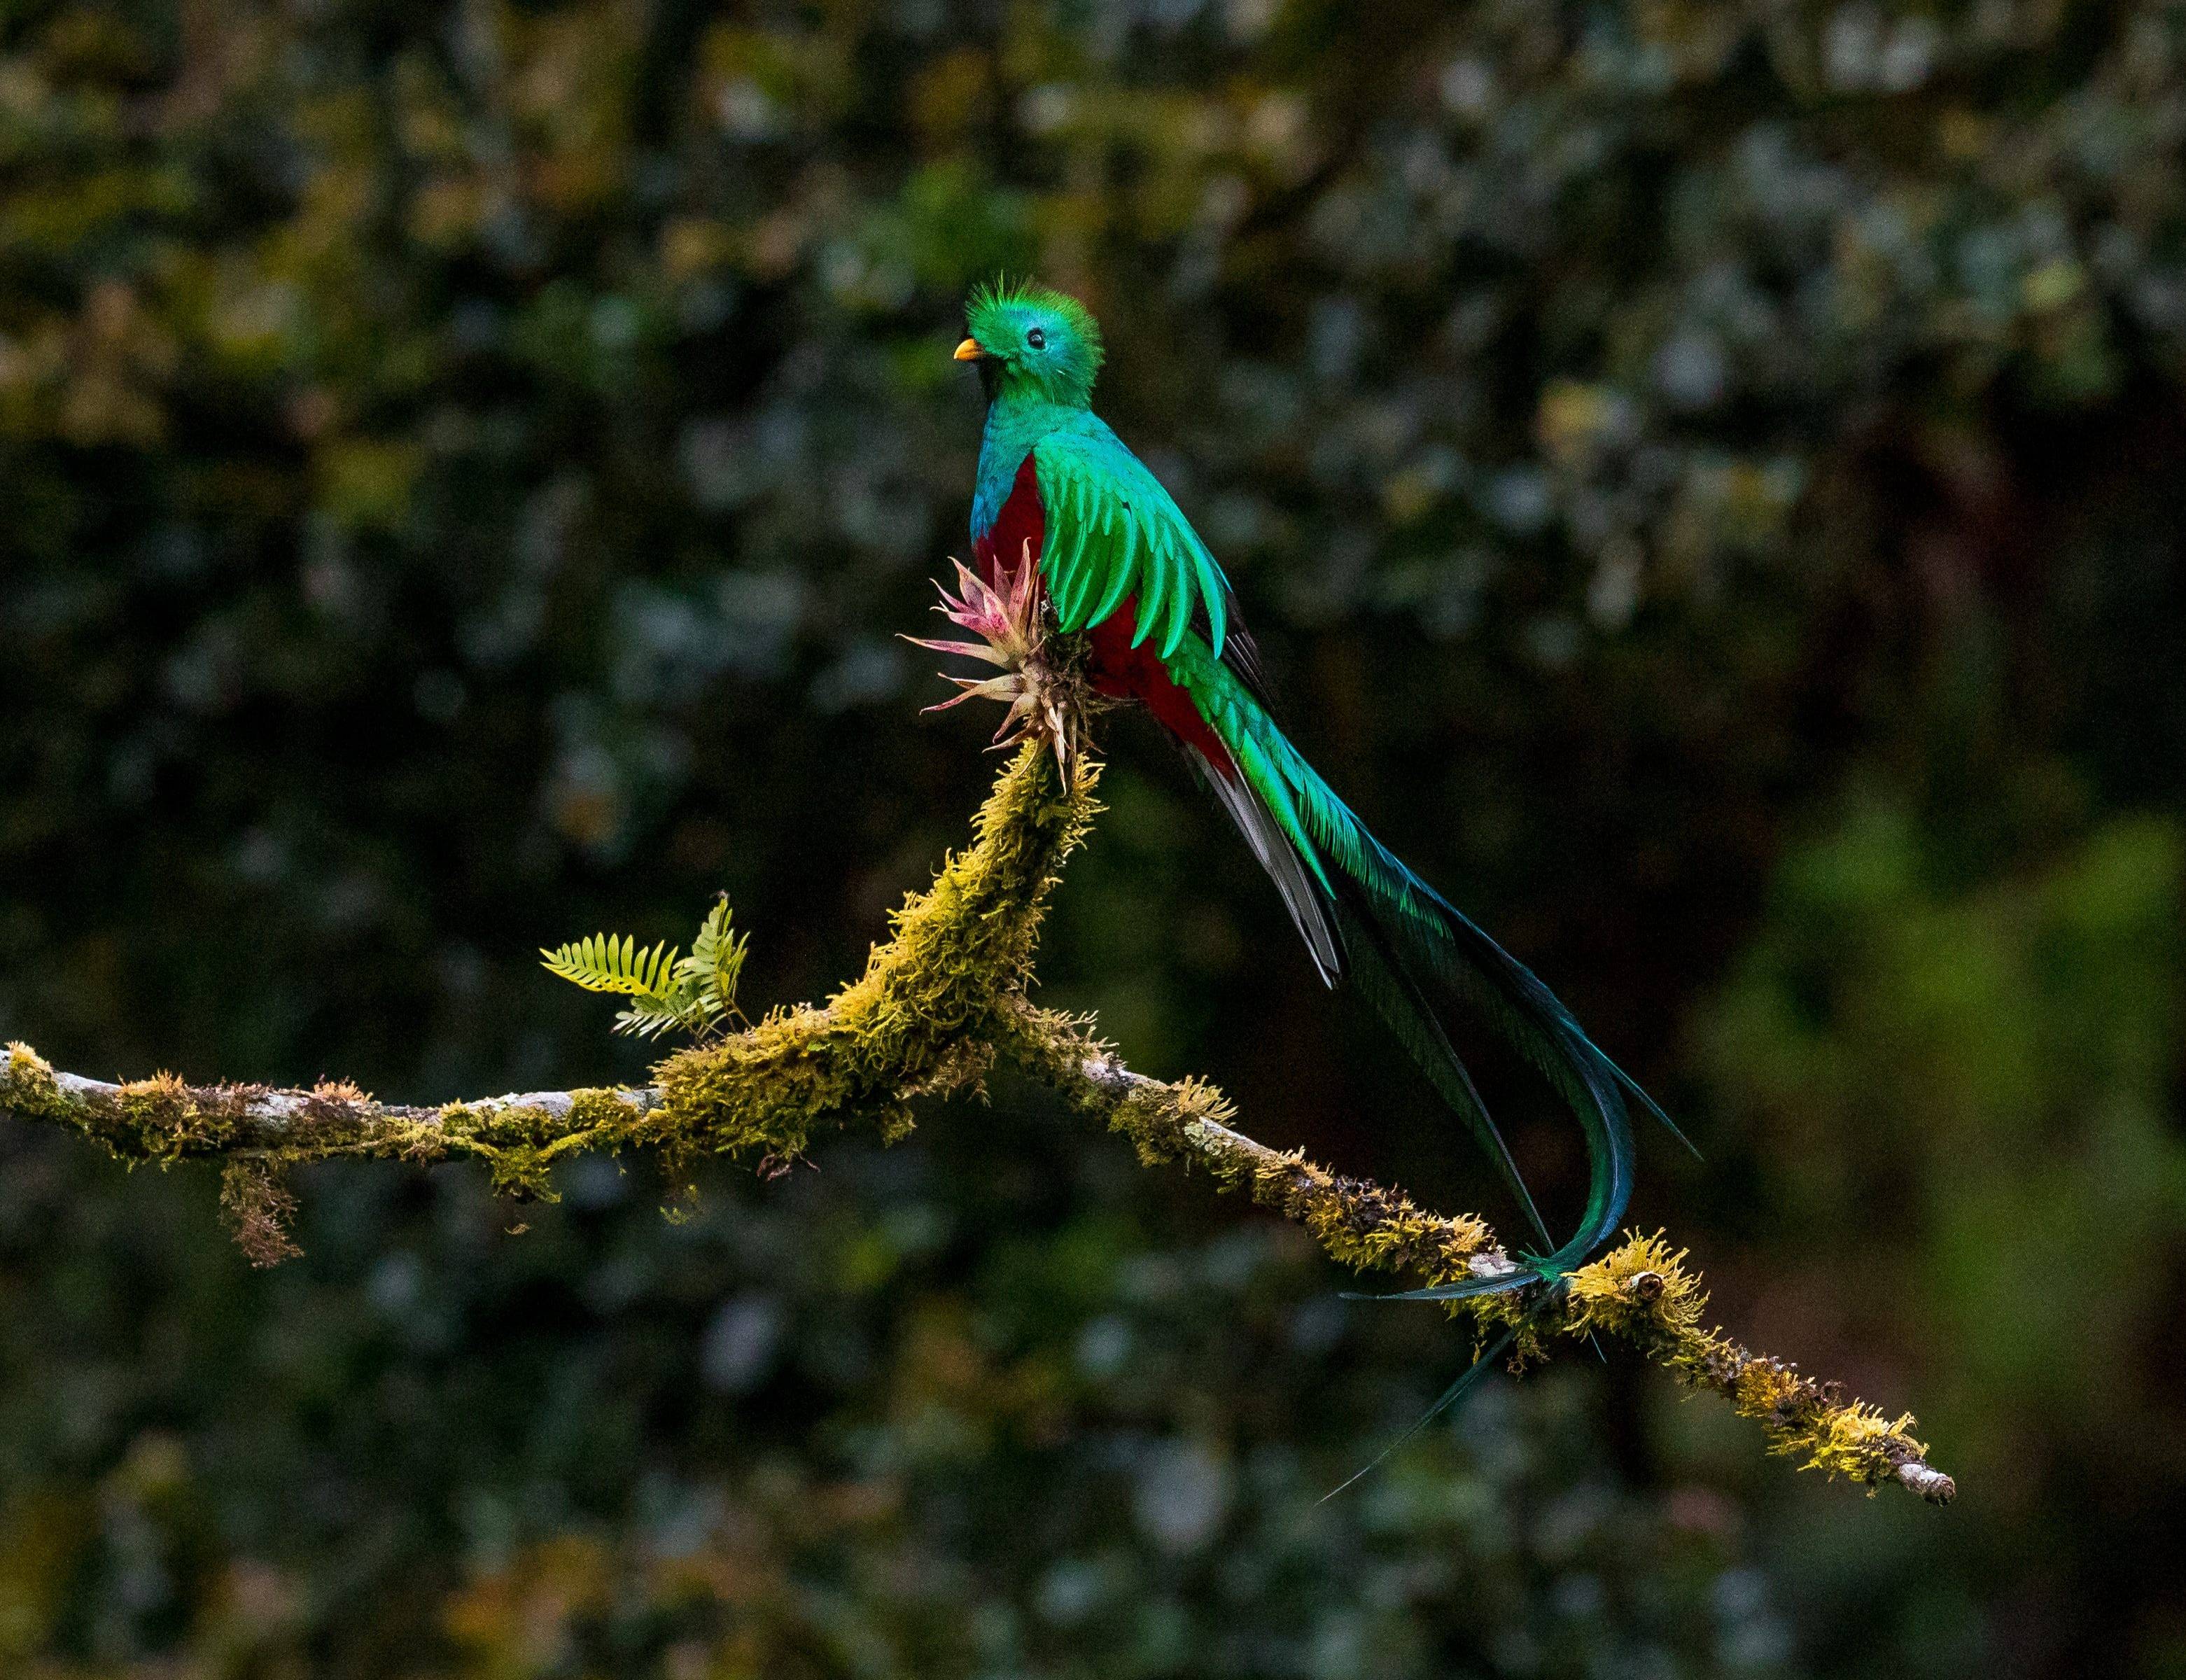 Weiterfahrt ins Quetzal Paradies San Gerardo de Dota